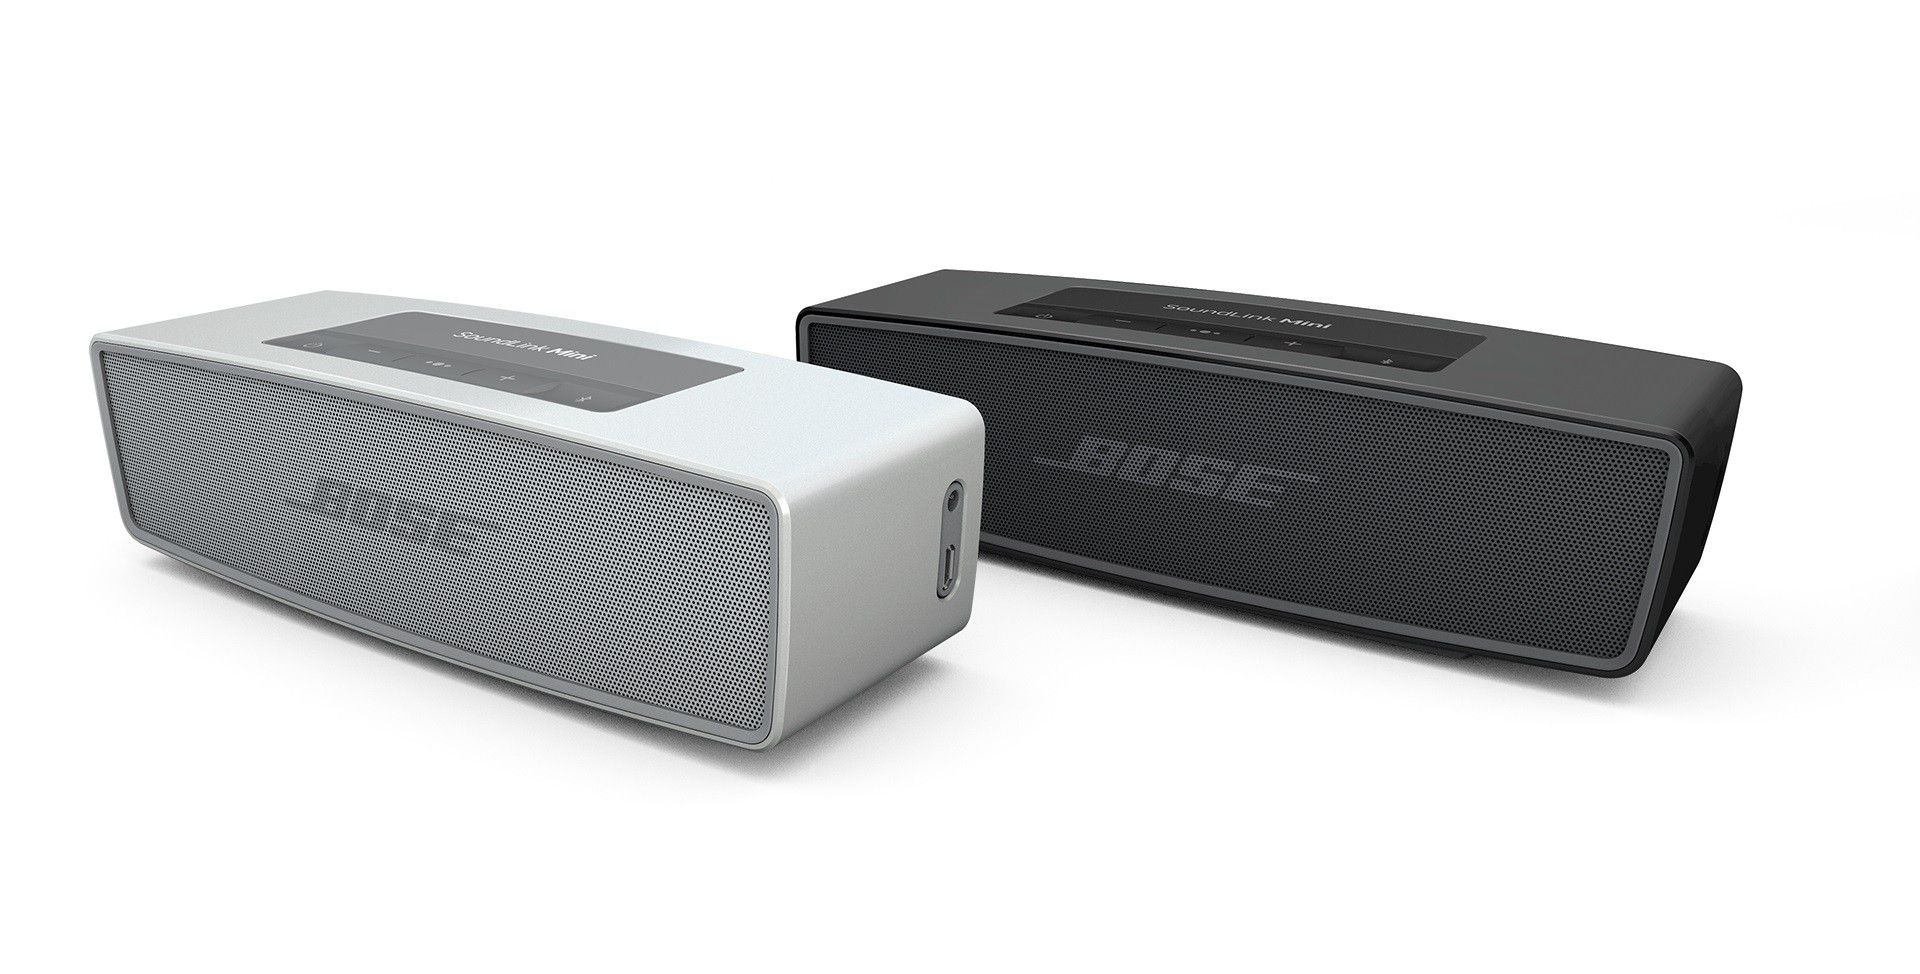 Bose soundlink mini bluetooth speaker ii vs ue boom 2 Die Besten Bluetooth Lautsprecher Im Vergleich Macwelt